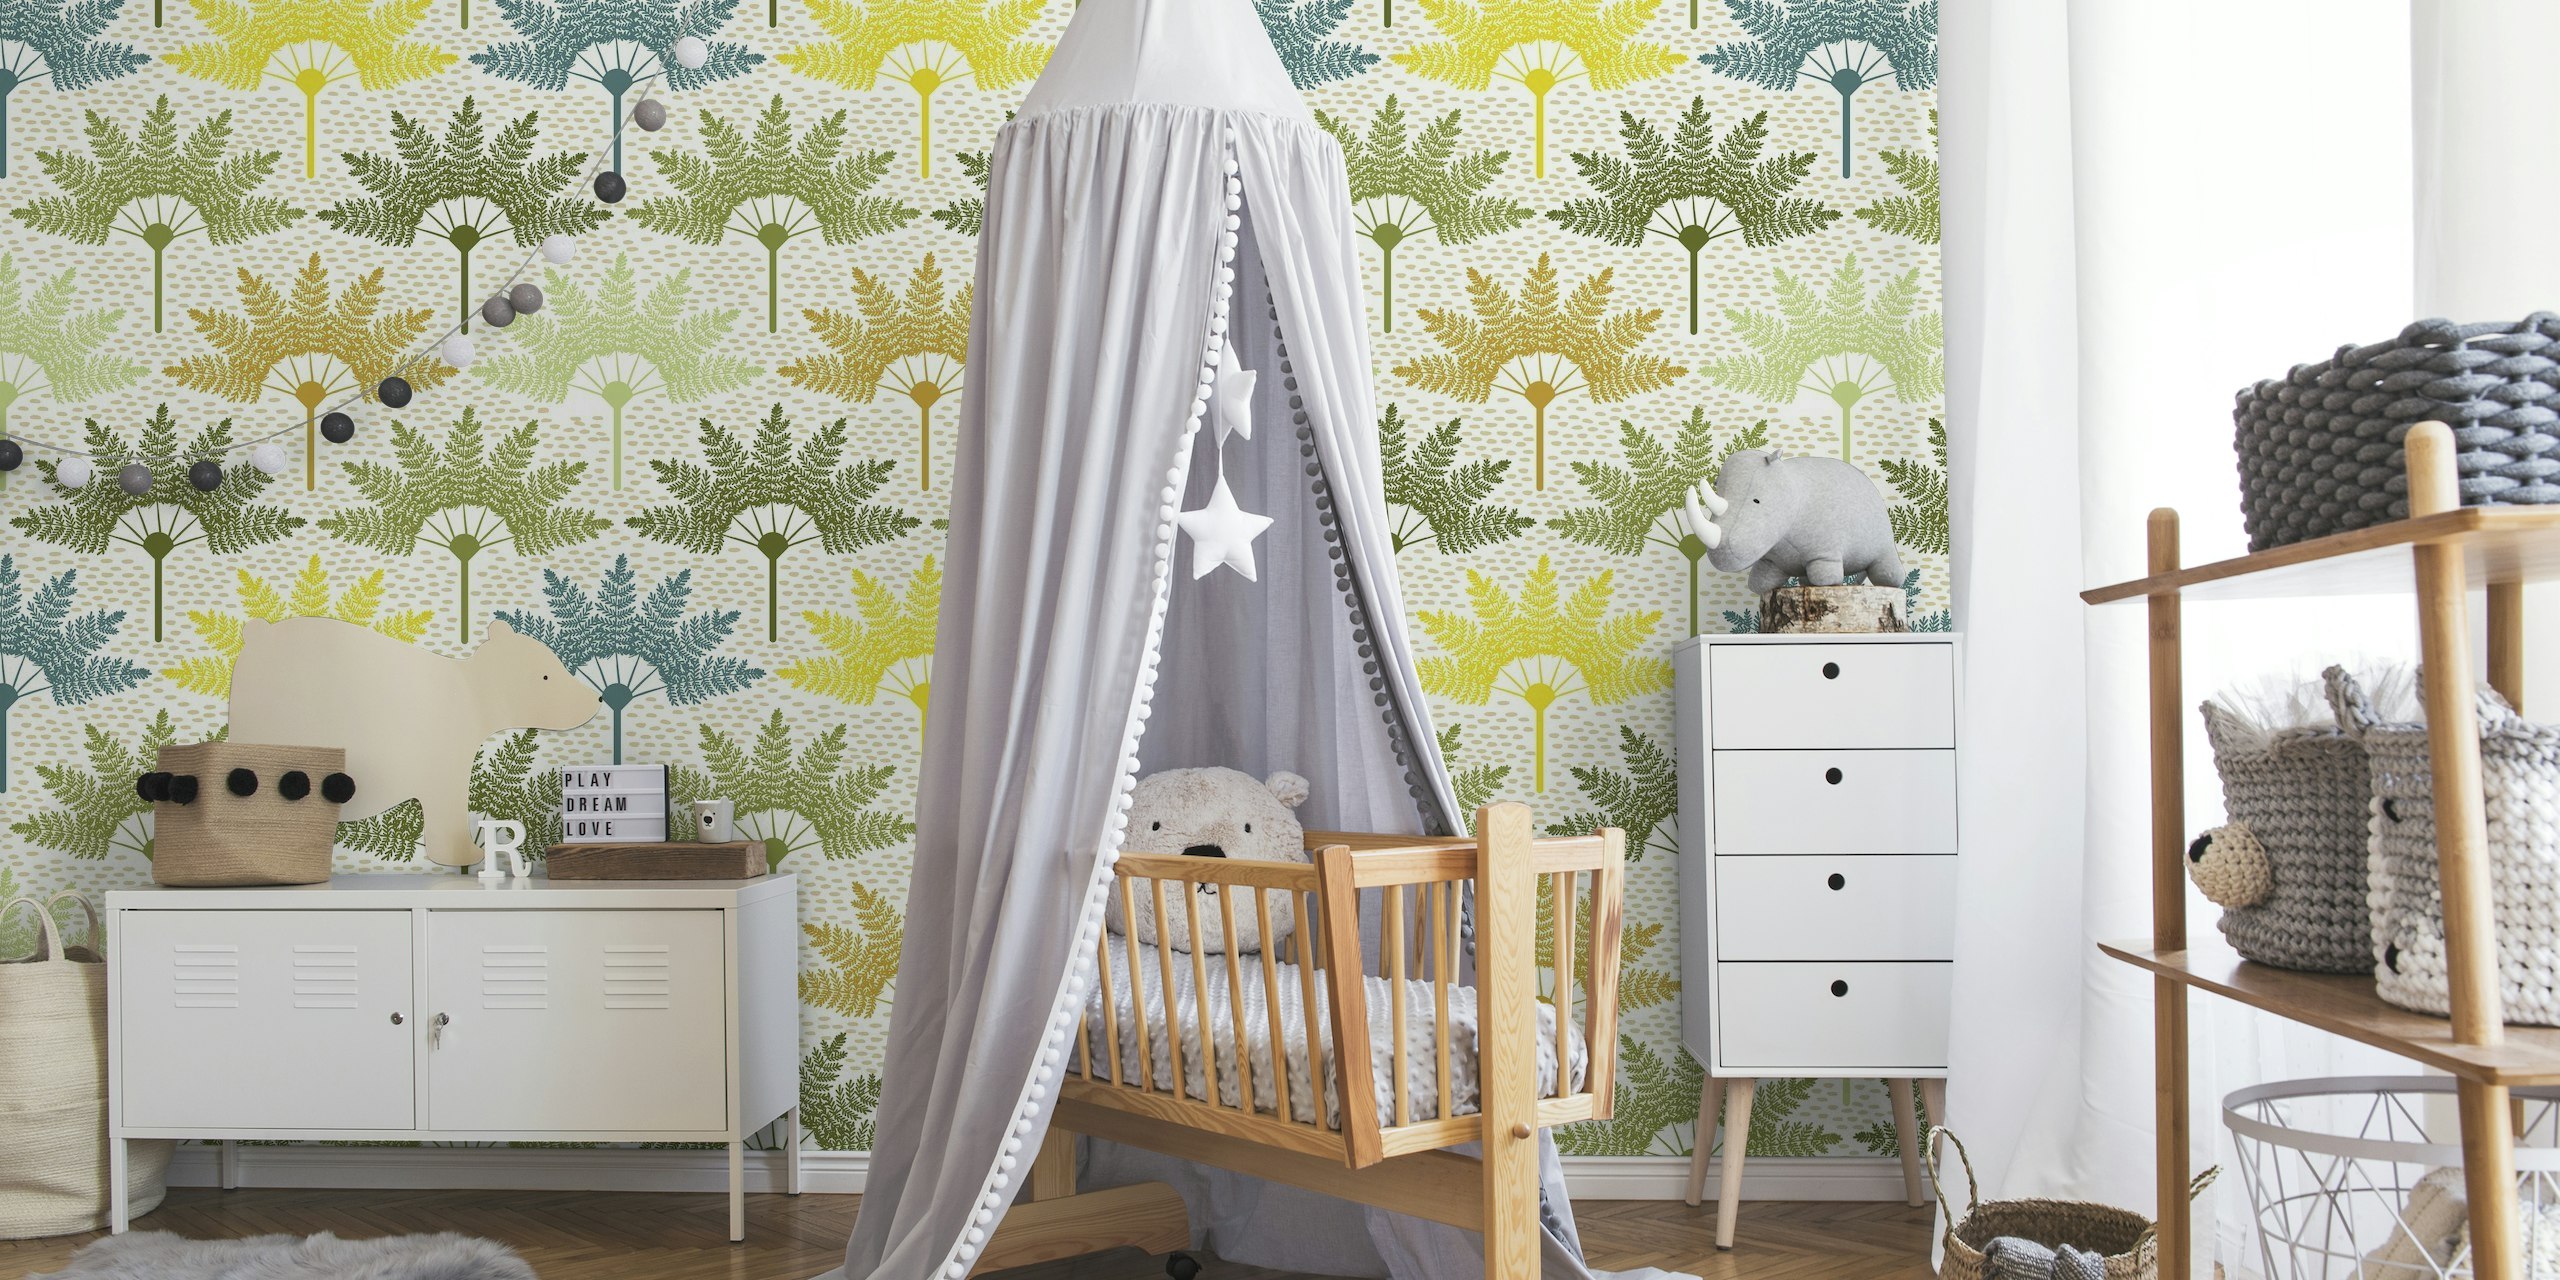 A palm pattern wallpaper